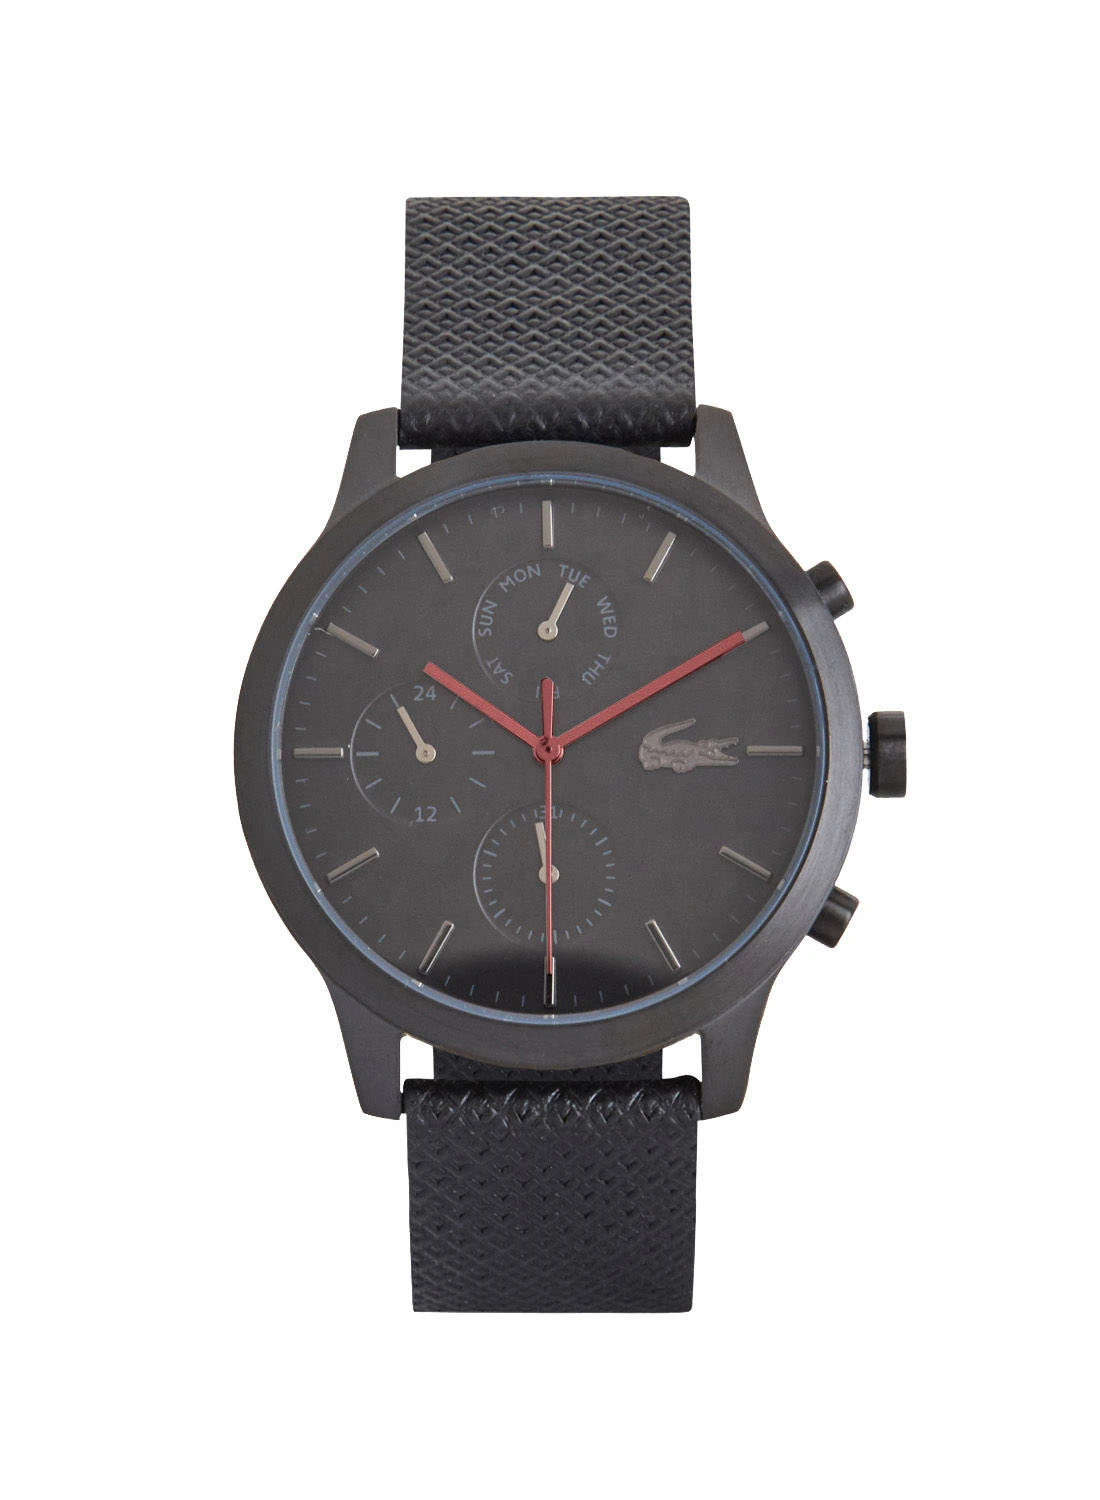 LACOSTE Men's Black L12.12 Chronograph Leather Watch